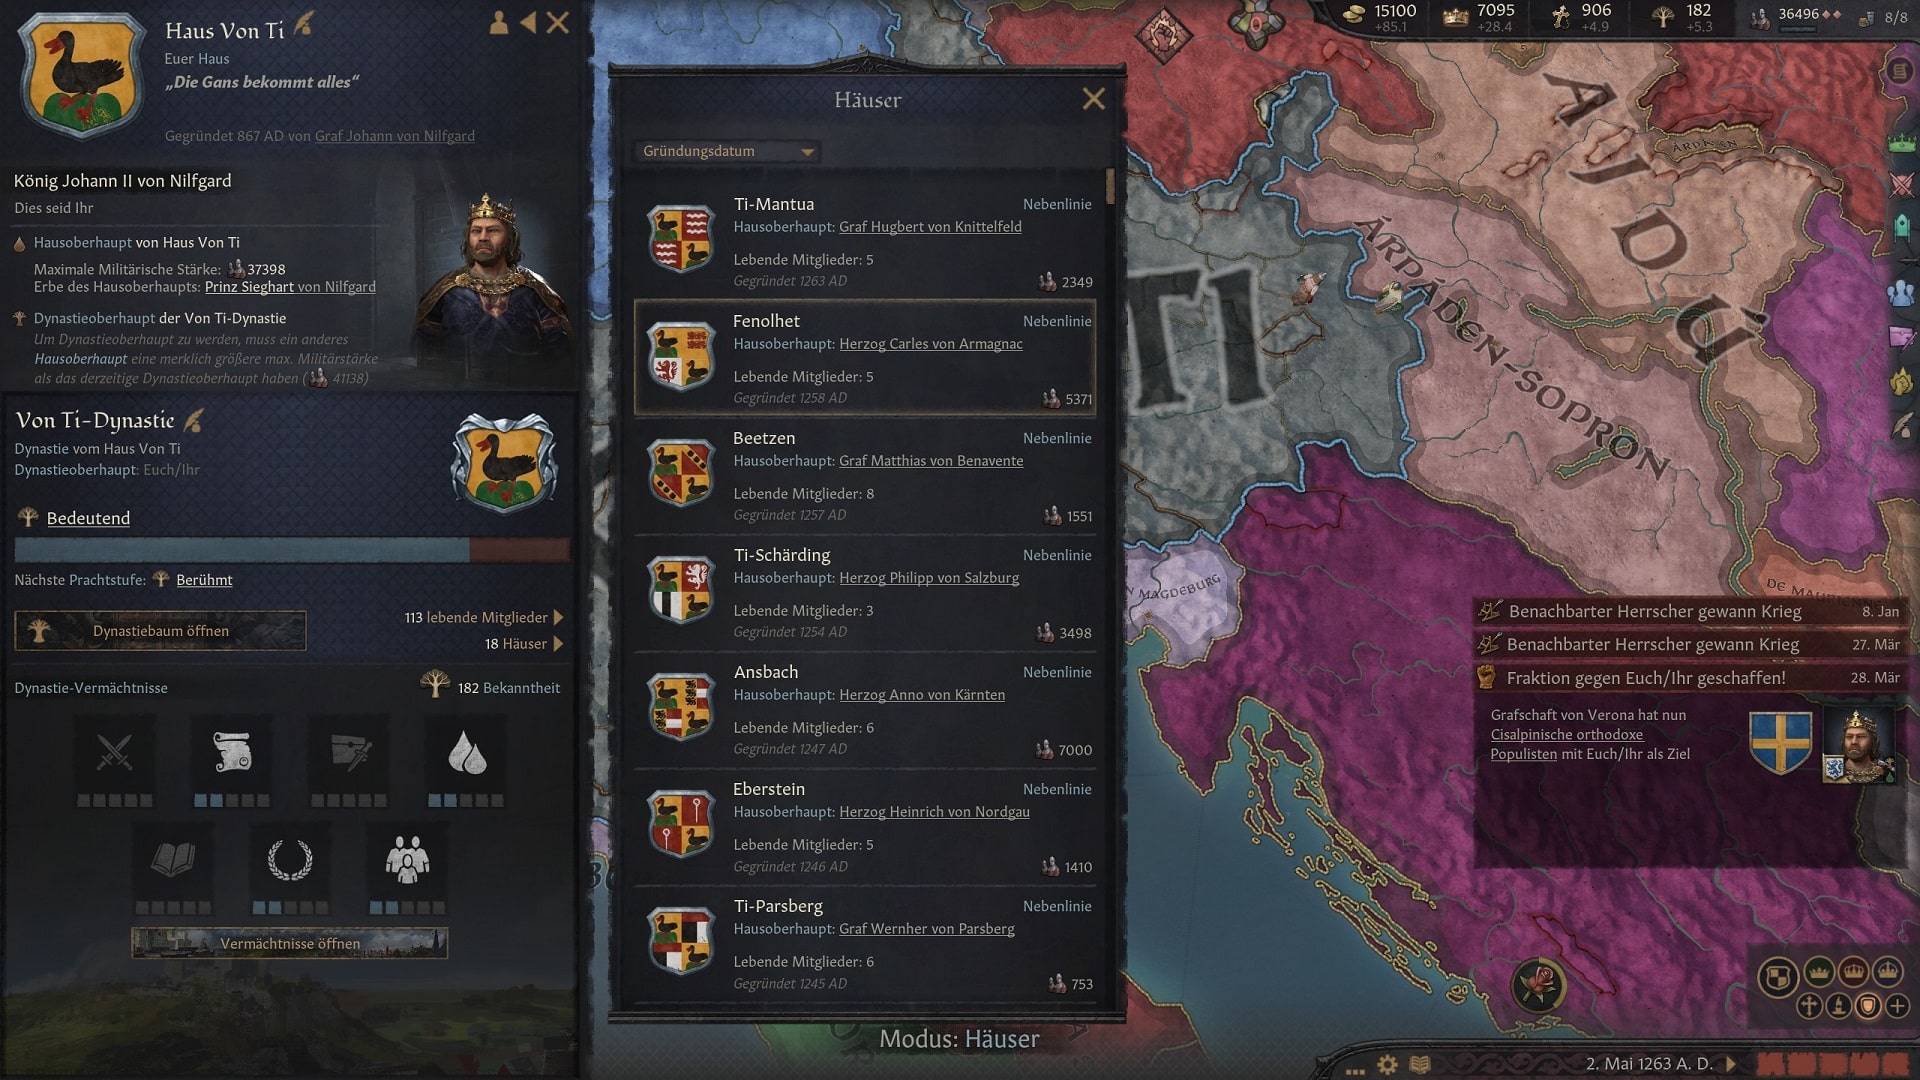 Dargestellt ist ein Screenshot aus der Mittelalter-Simulation Crusader Kings 3. Zu sehen ist die Dynastie des Spielers zahlreiche Unter-Dynastien, die sich im Verlauf des Spiels gebildet haben. 